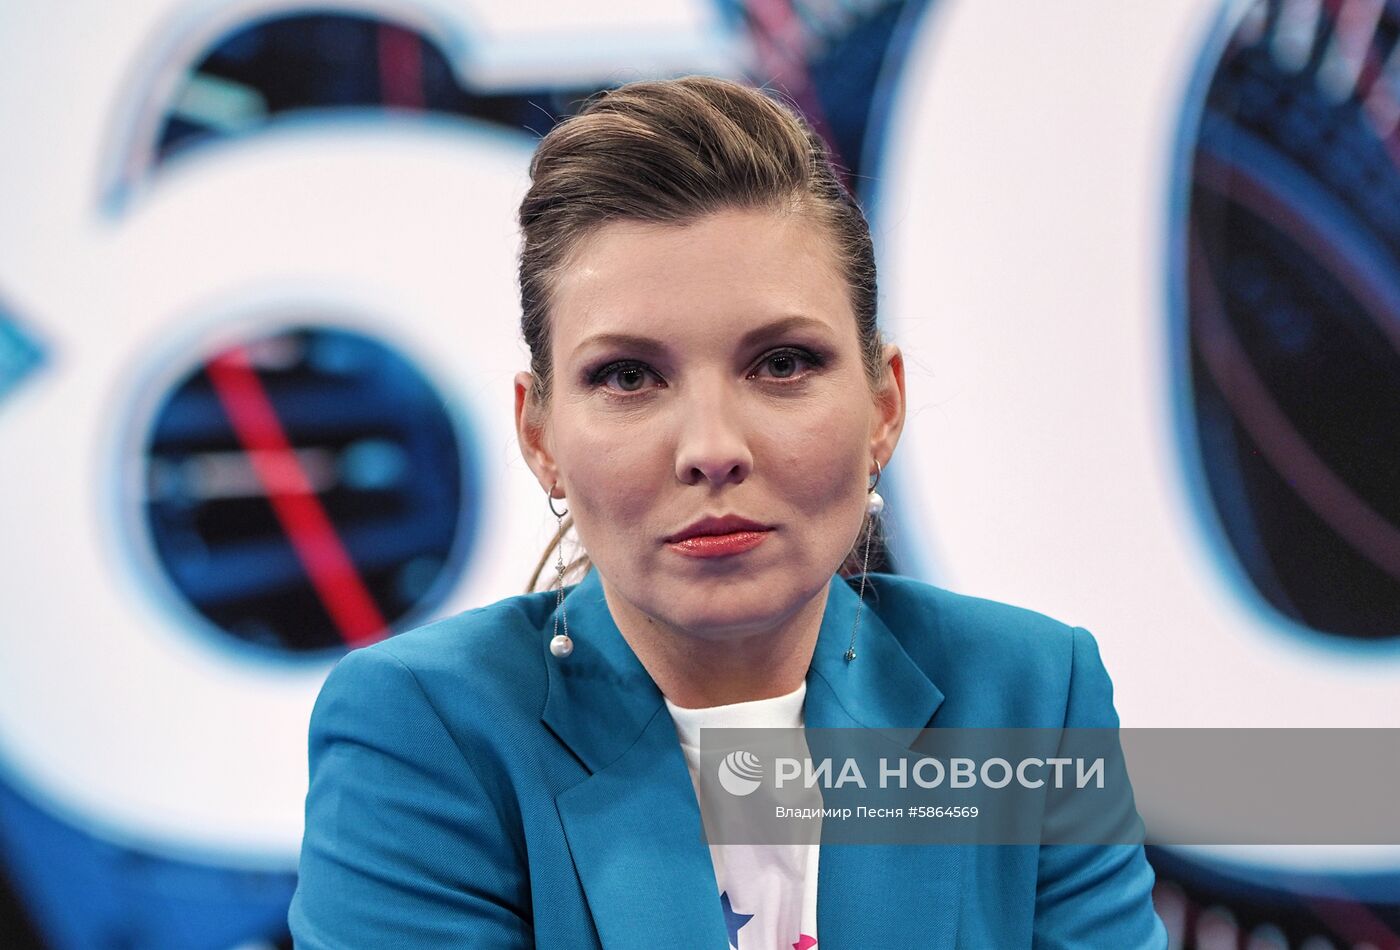 Телеведущая Ольга Скабеева